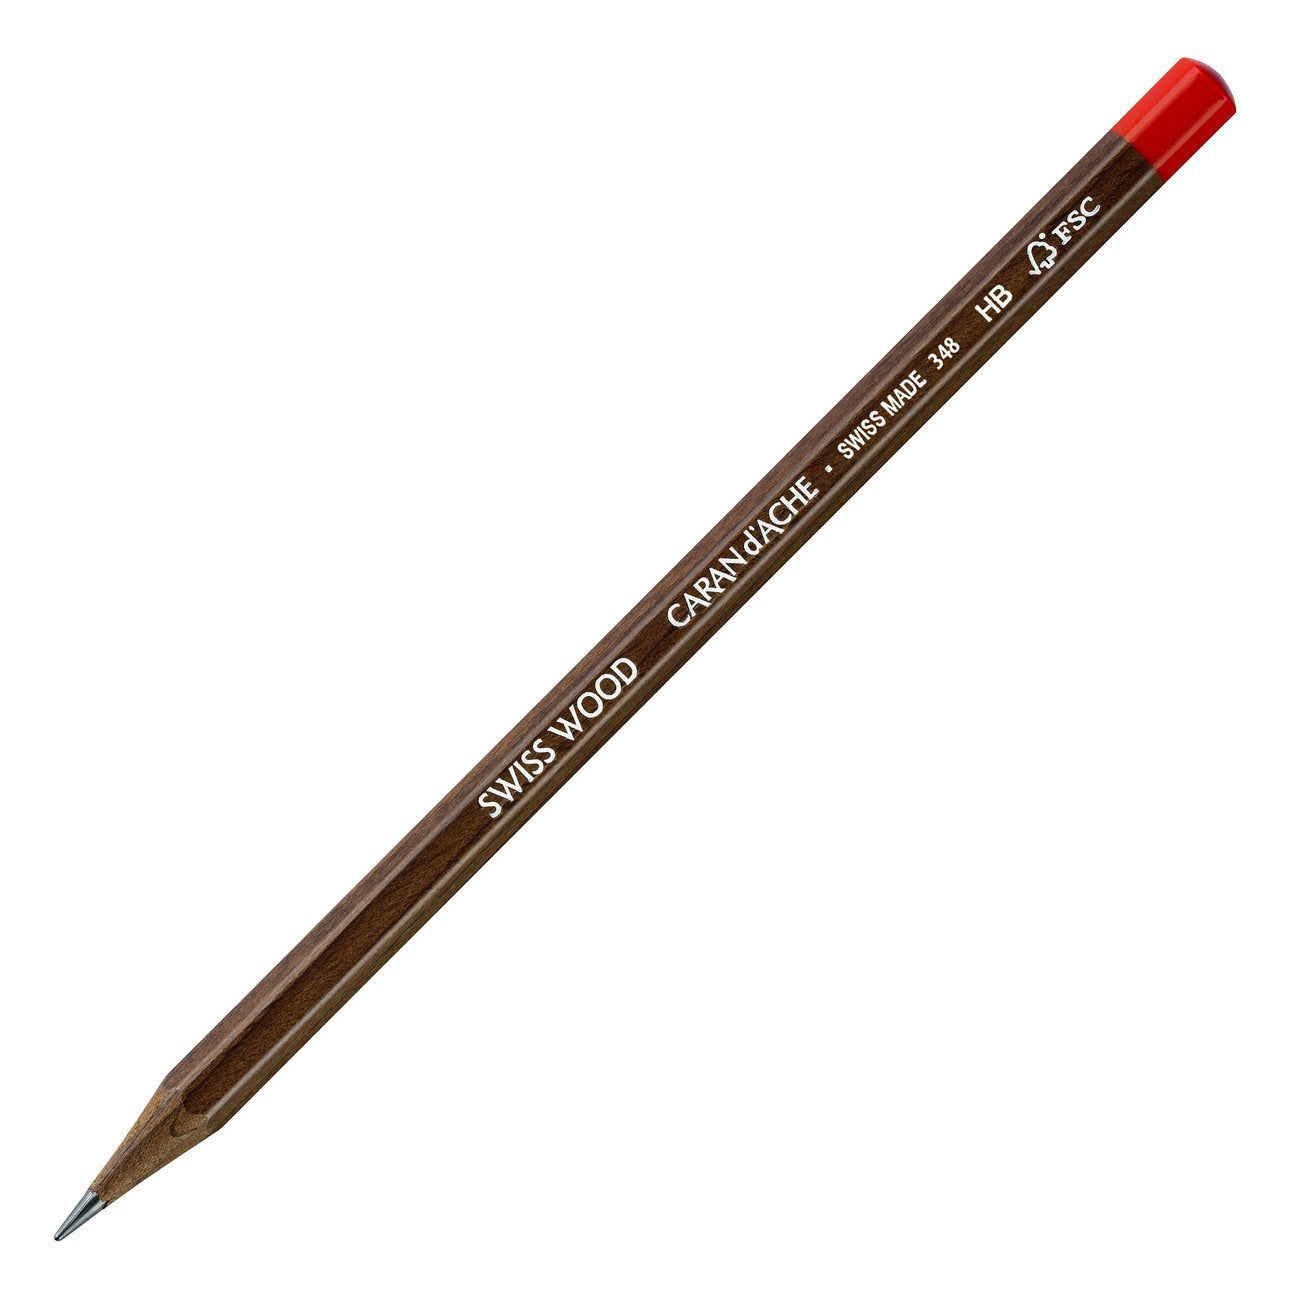 Caran d'Ache Swiss Beech Wood Pencil 